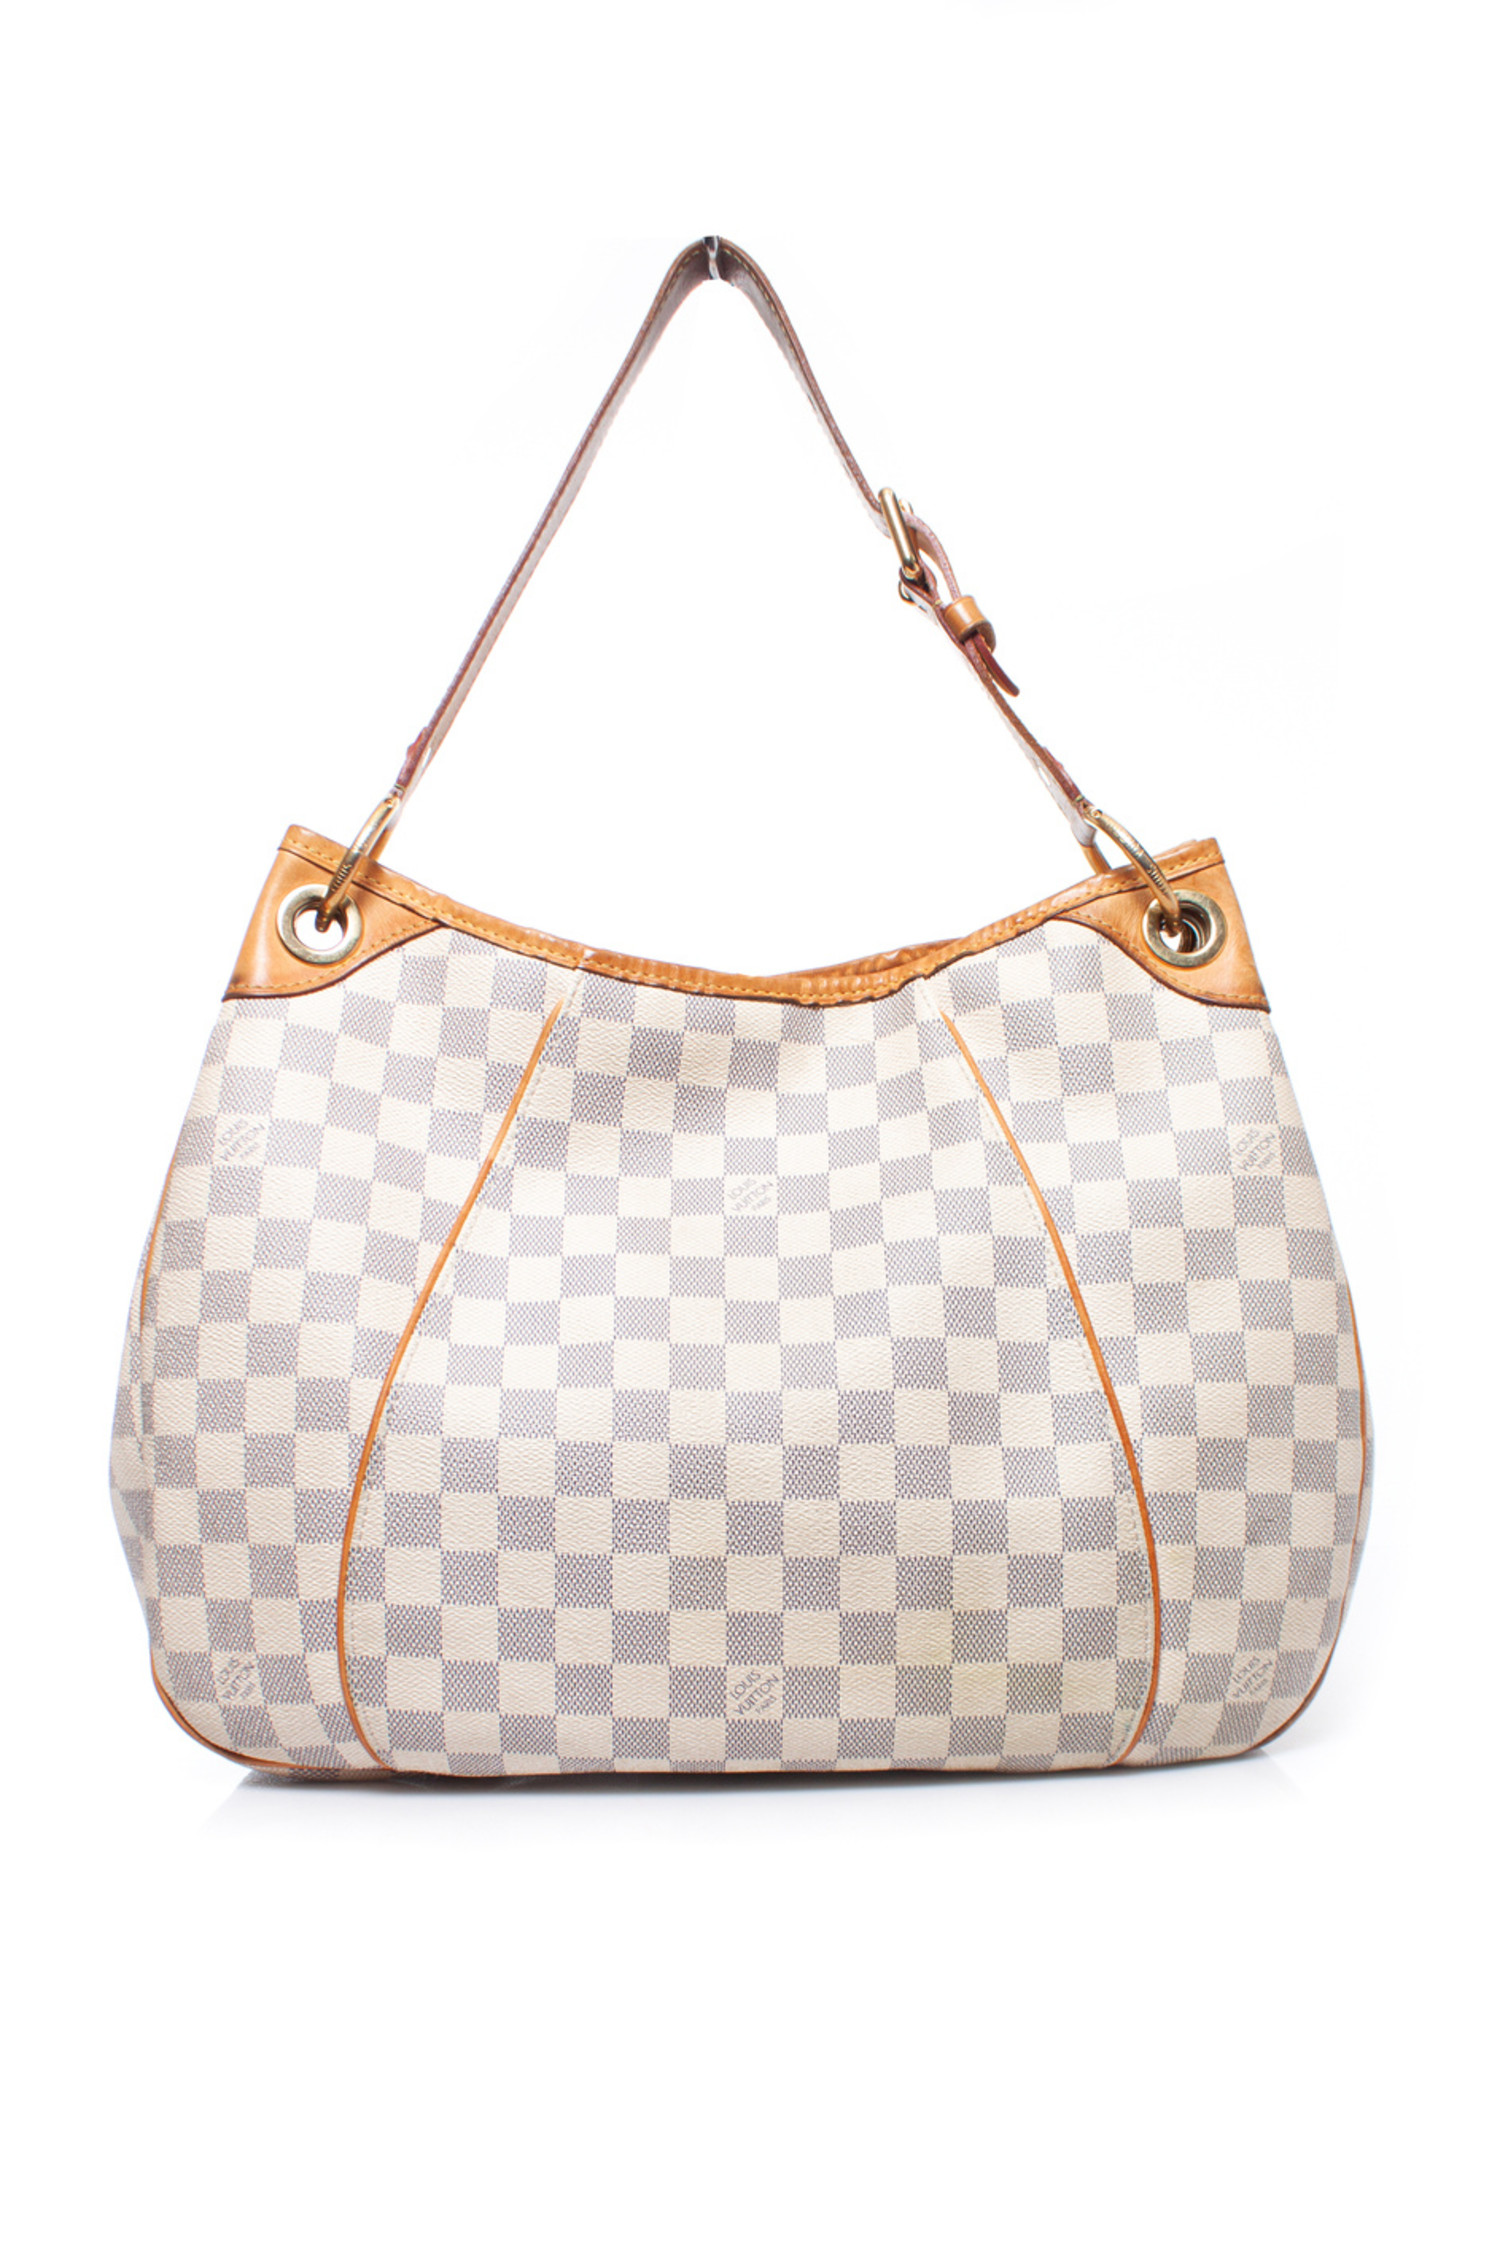 Louis Vuitton Galliera PM shoulder bag – My Girlfriend's Wardrobe LLC